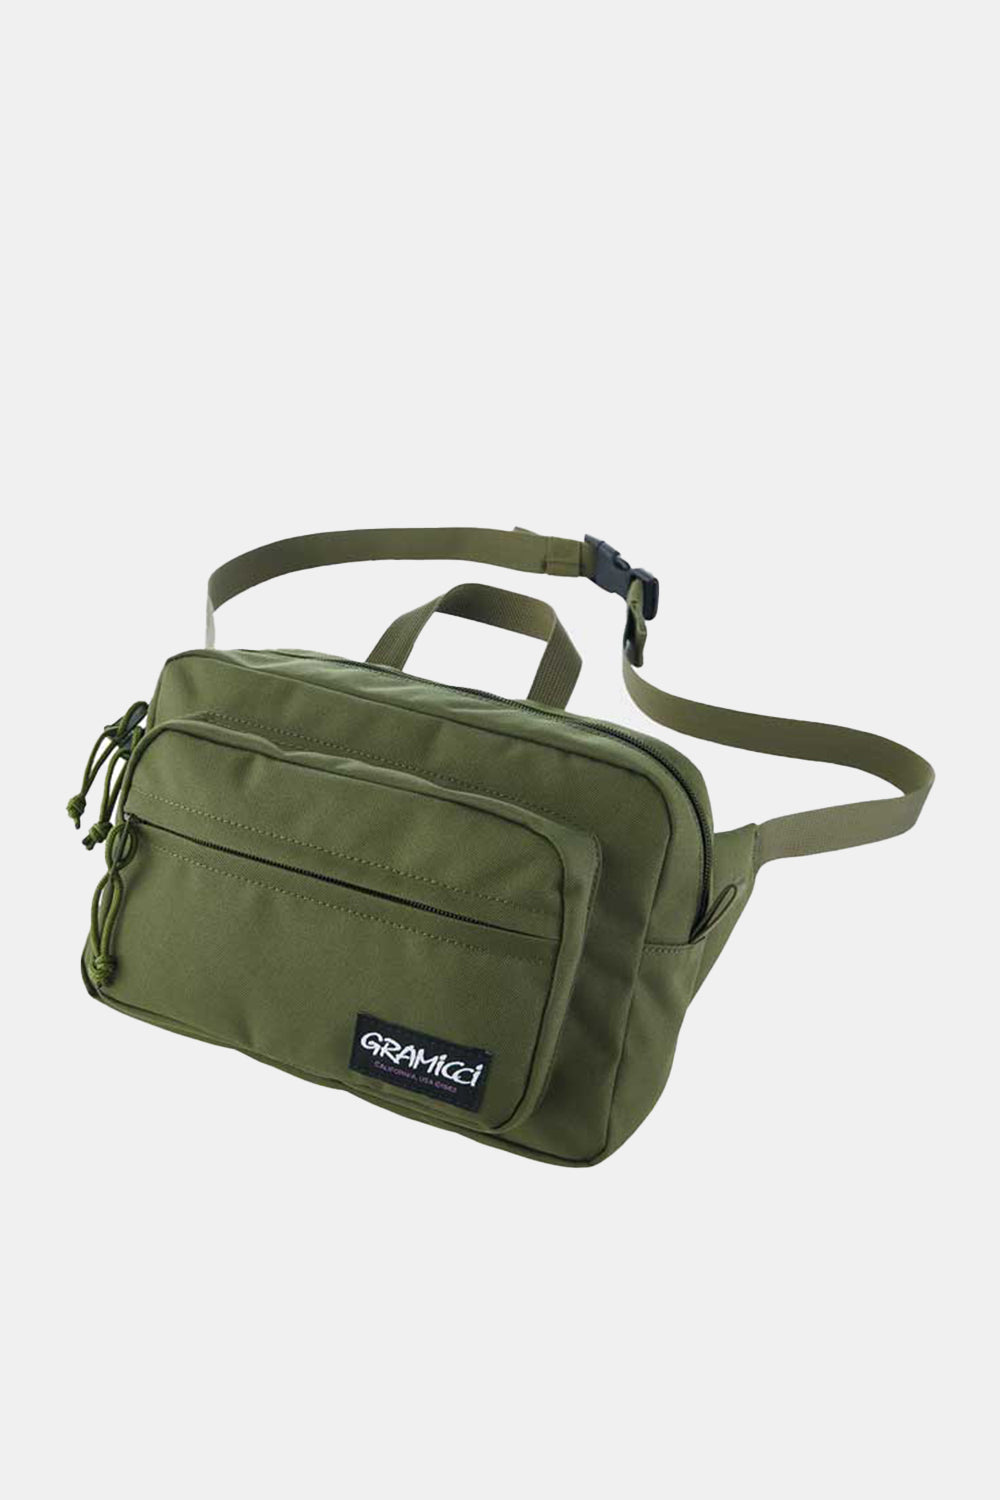 Gramicci Cordura Hiker Bag (Olive Drab)